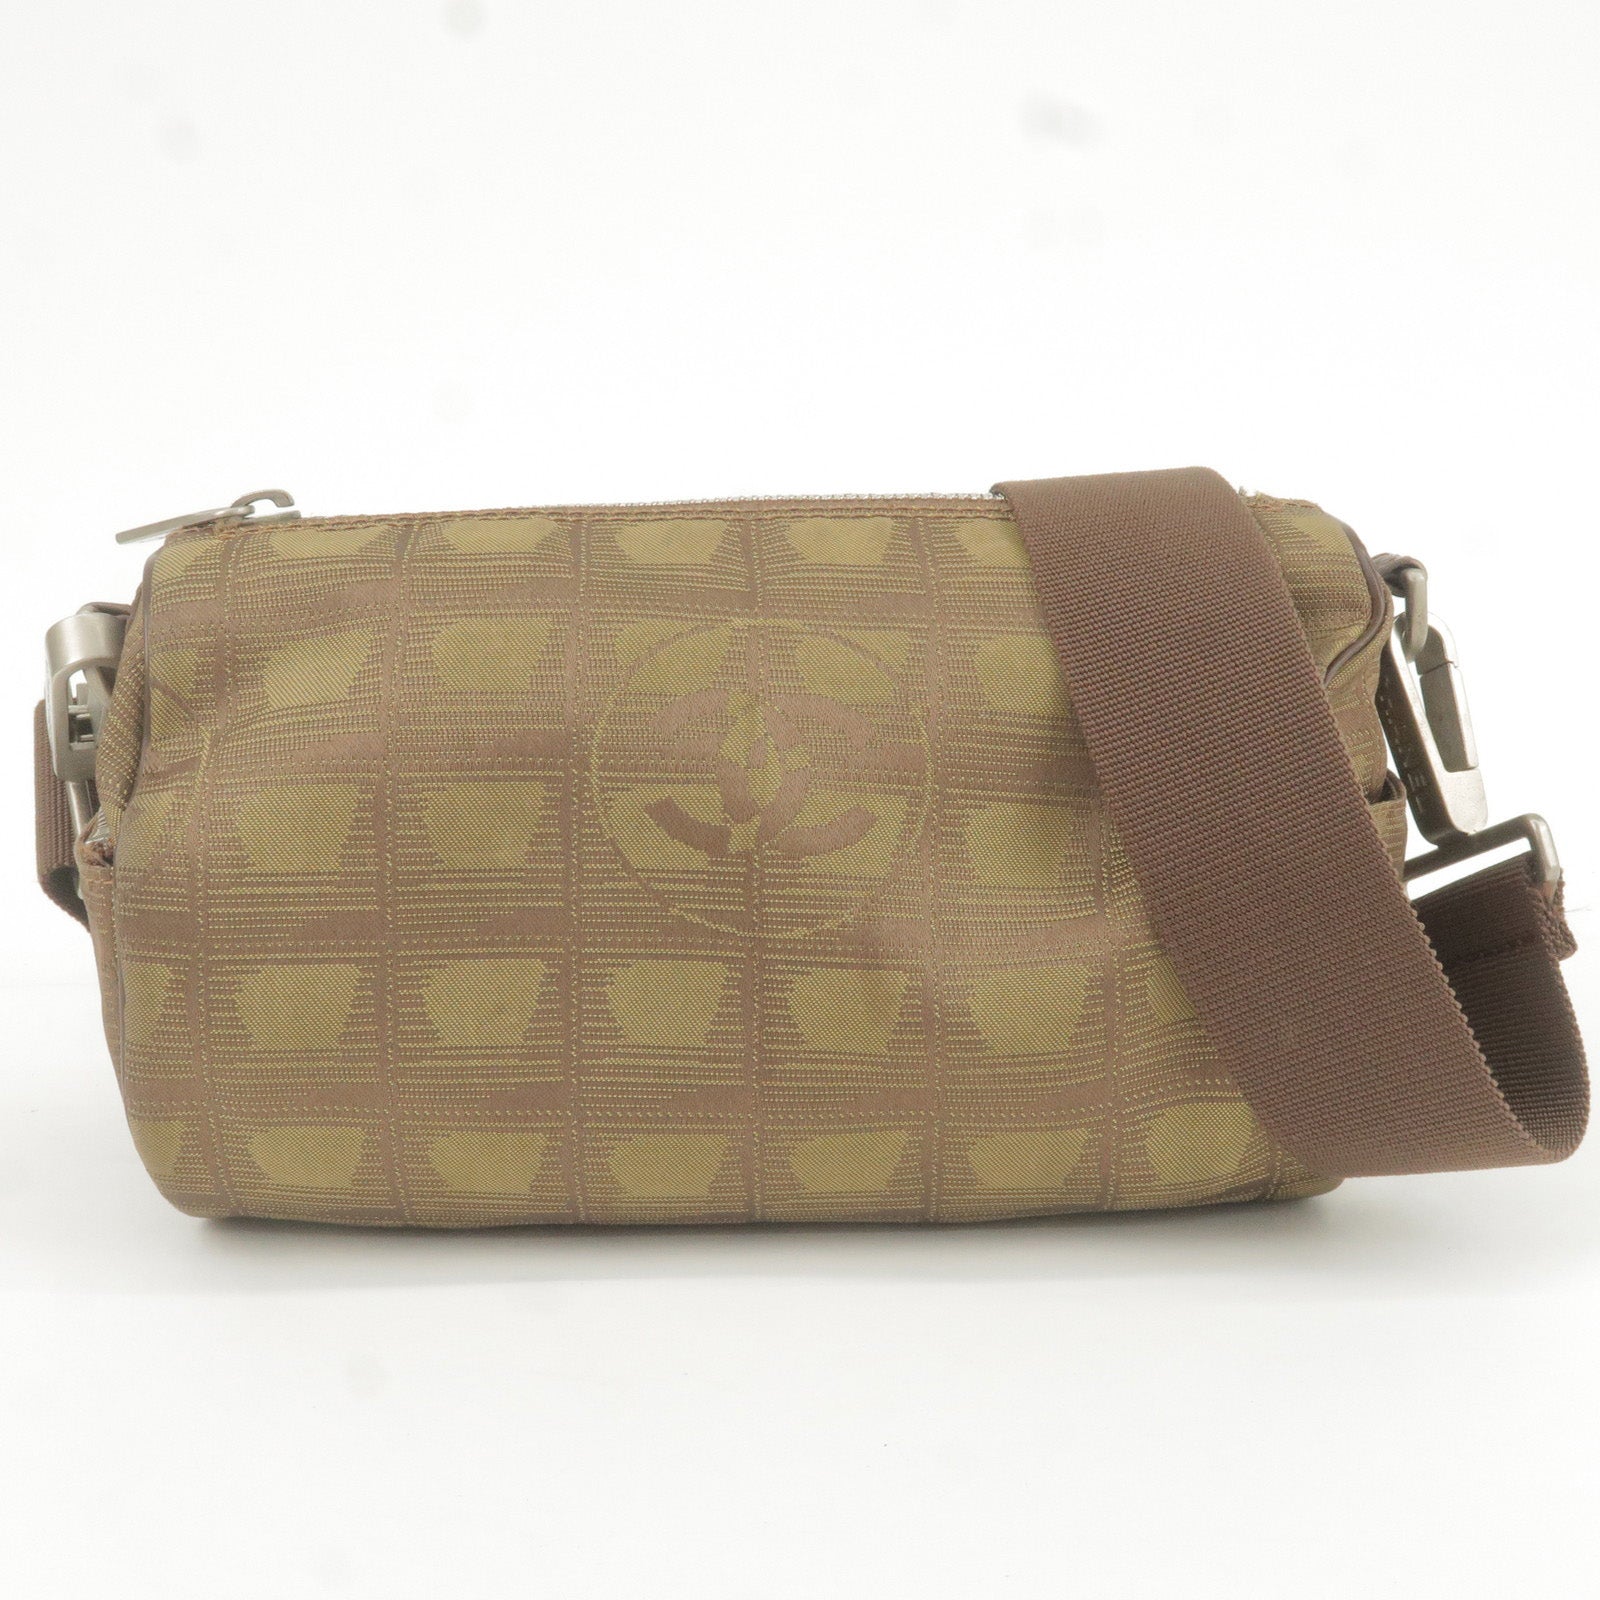 CHANEL-Travel-Line-Nylon-Jacquard-Leather-Mini-Roll-Bag-Khaki